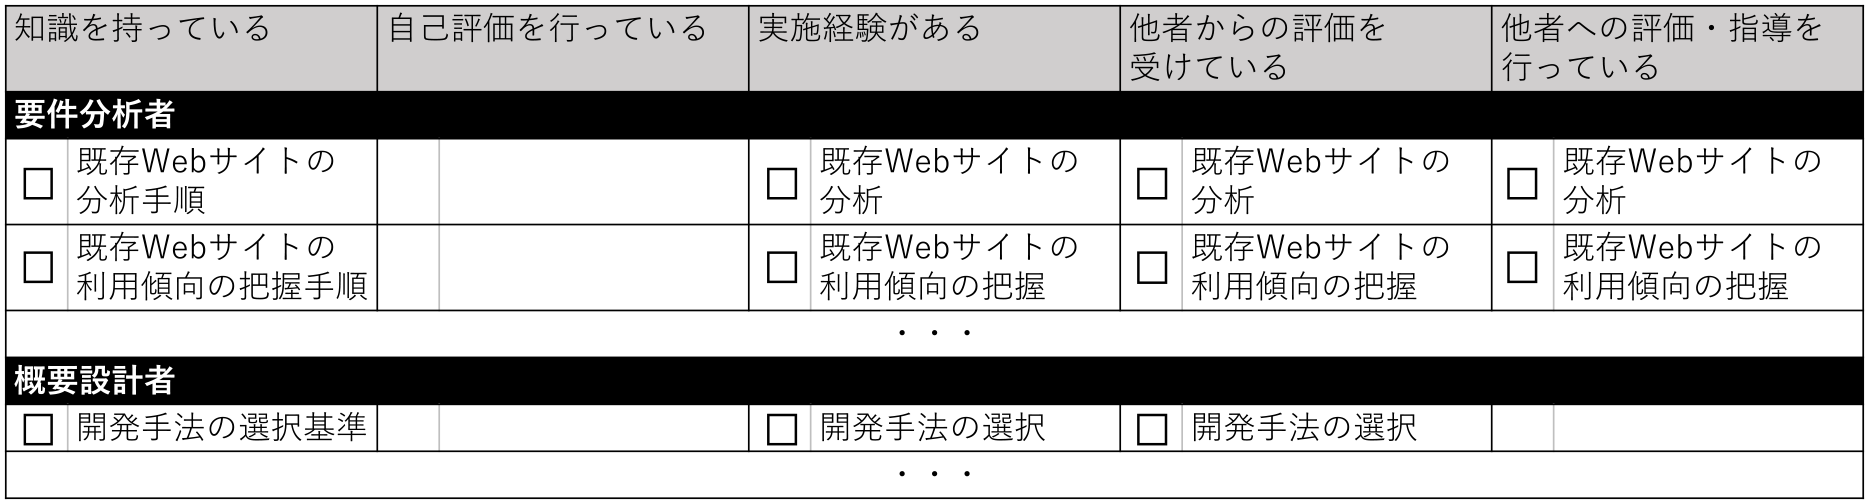 チェックシートの構成　Structure of the checklist.